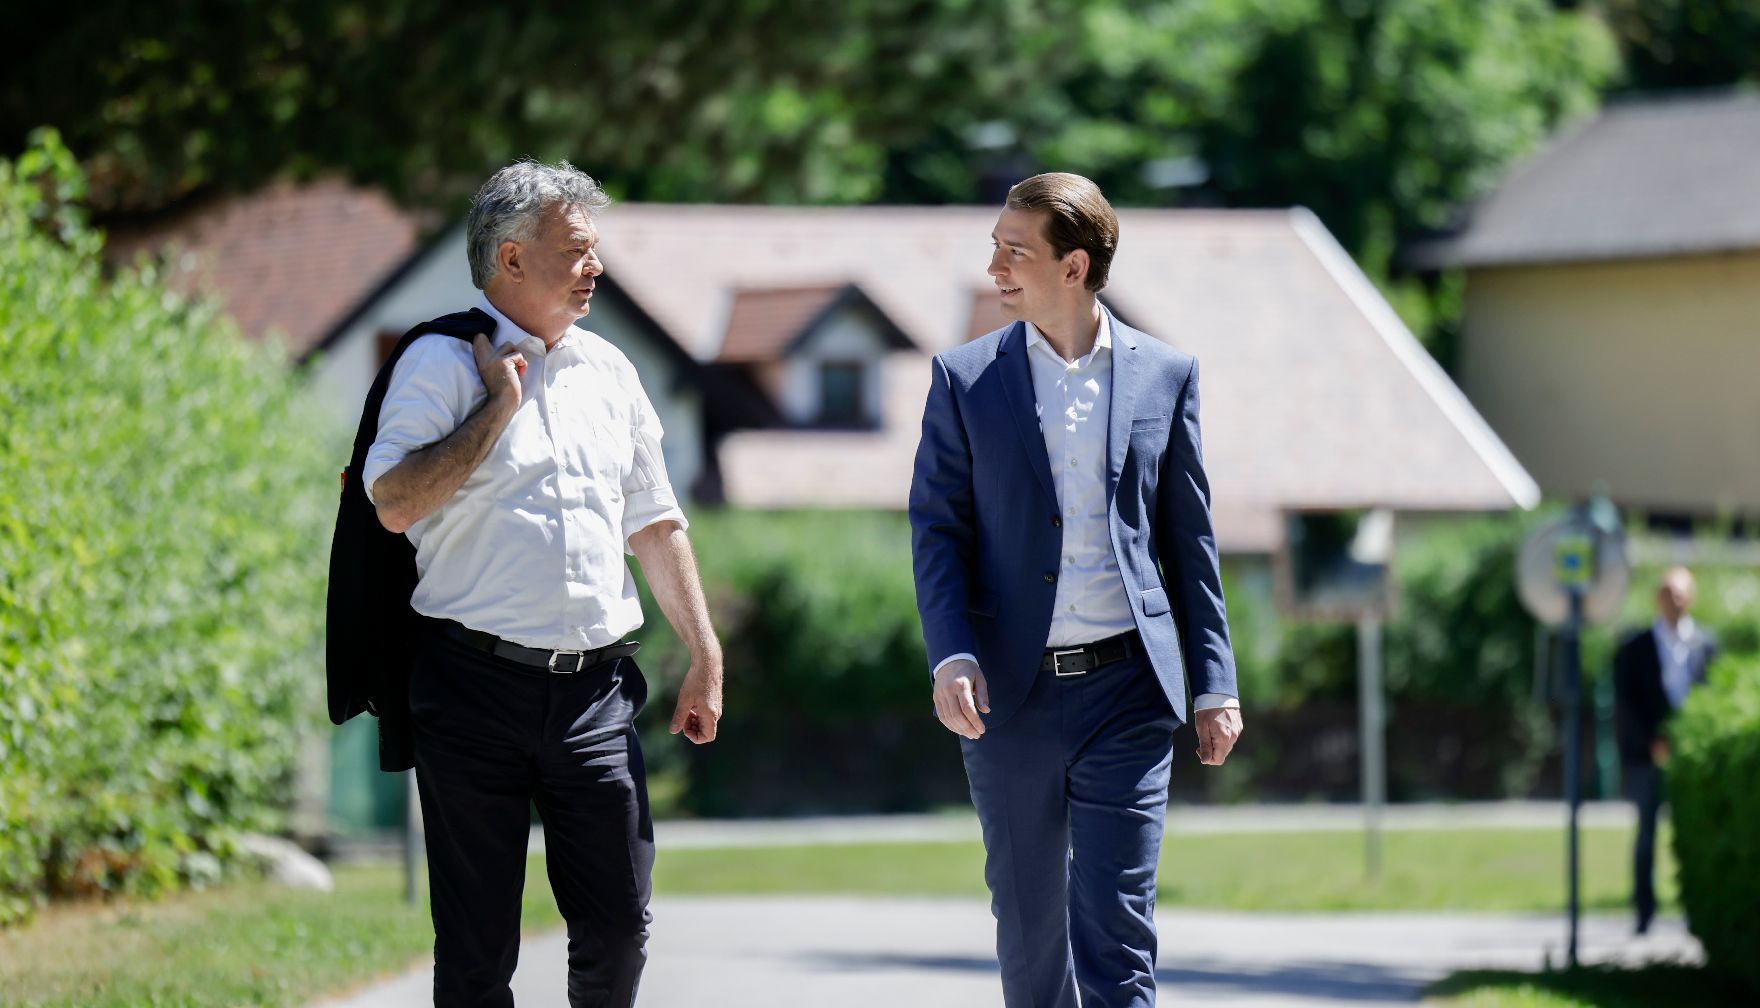 Am 28. Juli 2021 fand der Sommerministerrat der Österreichischen Bundesregierung statt. Im Bild Bundeskanzler Sebastian Kurz (r.) mit Vizekanzler Werner Kogler (l.).